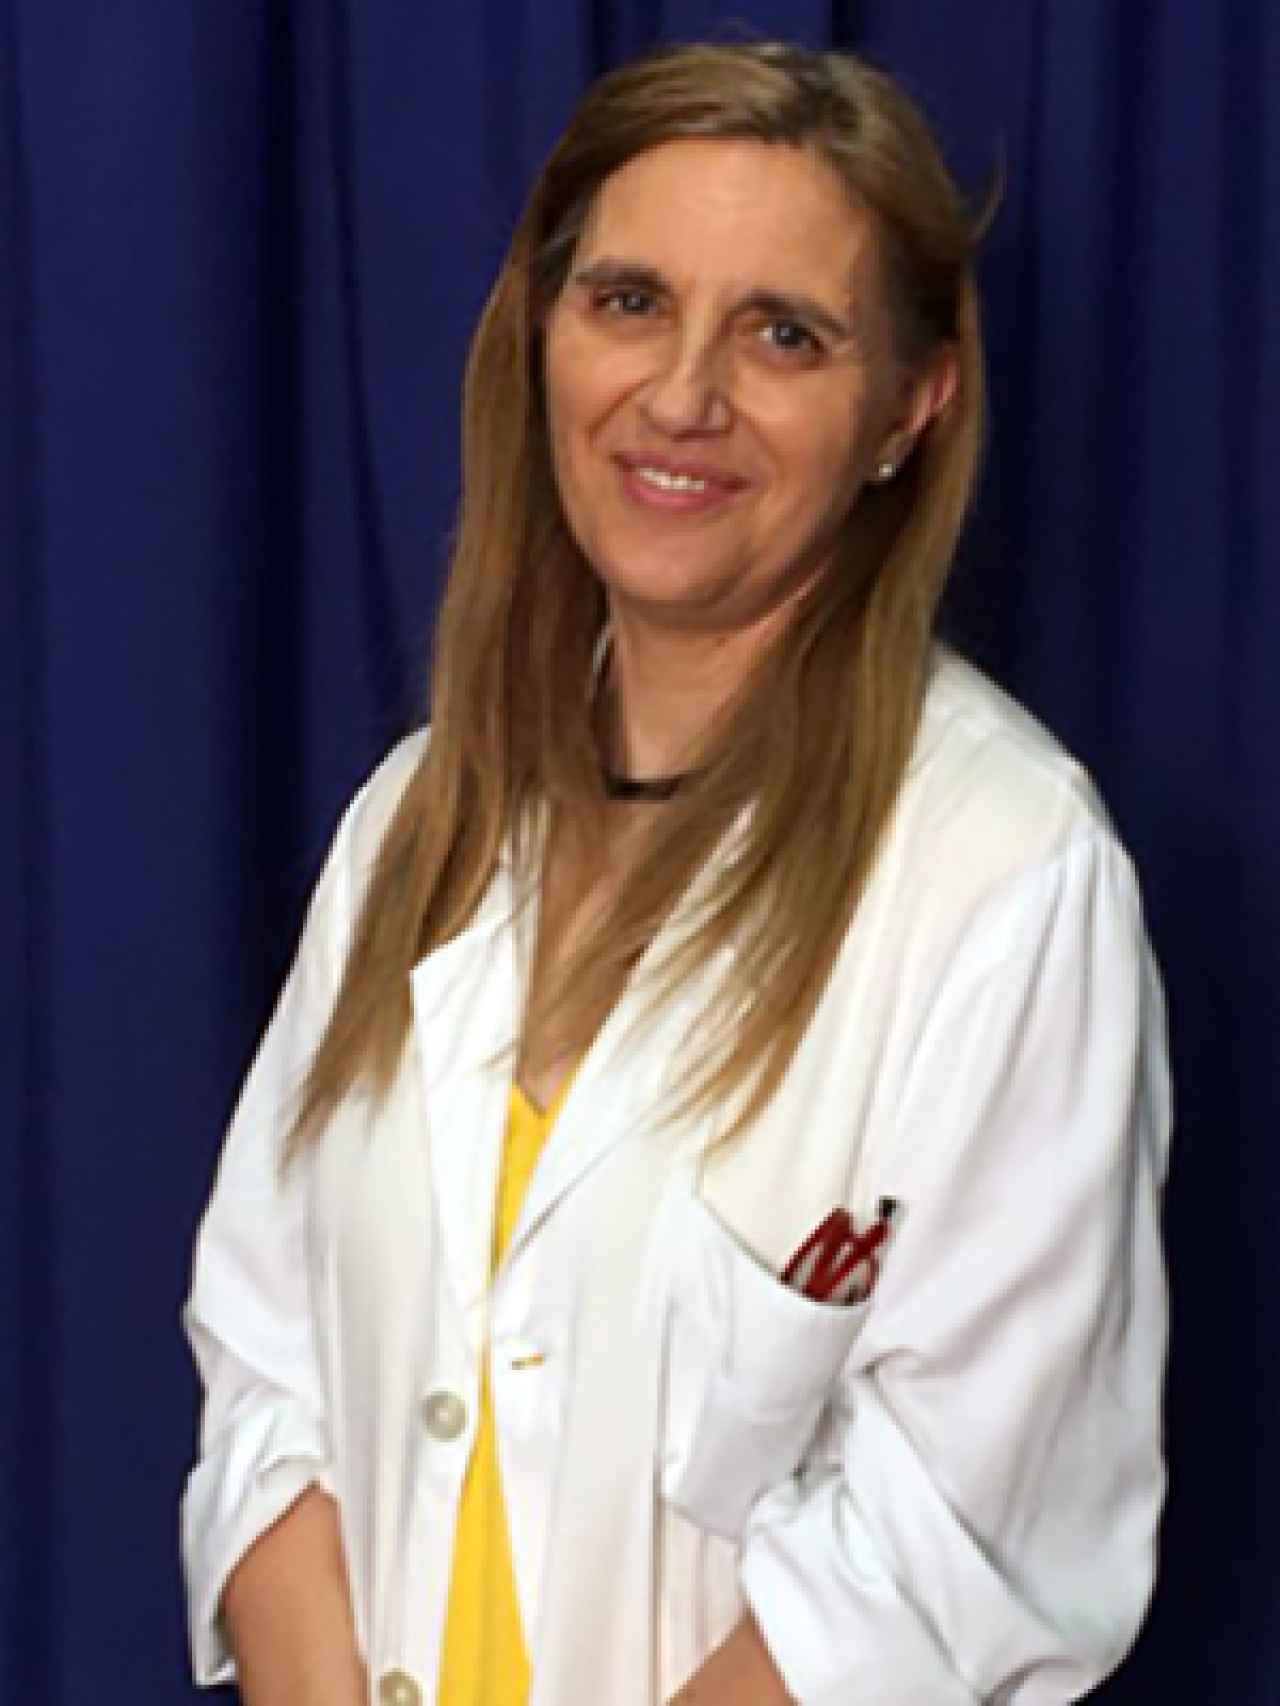 La doctora López también es investigadora en el Instituto Oftalmobiologia Aplicada (IOBA), en Valladolid.